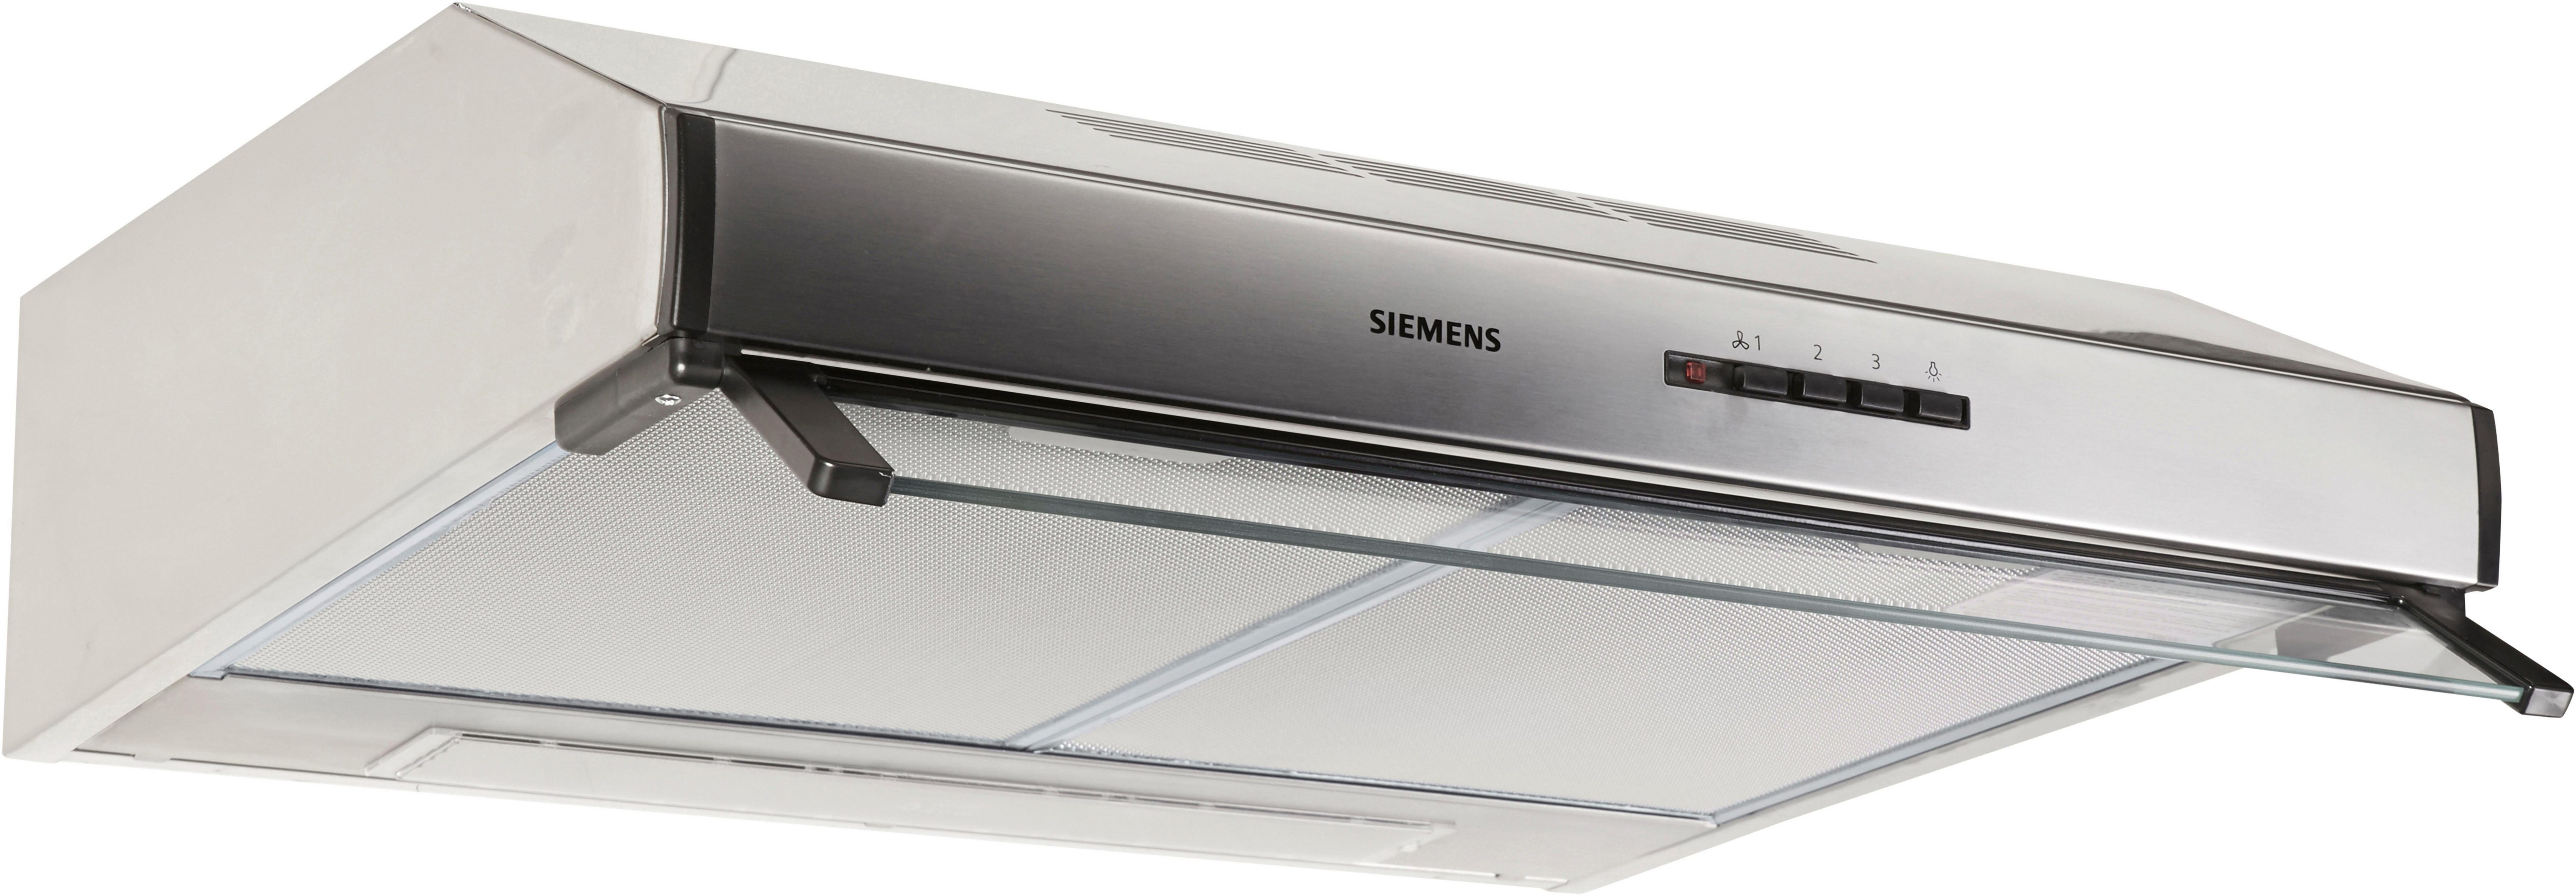 SIEMENS Unterbauhaube Serie iQ100 LU63LCC50, Die Lüfterleistung von 350  m³/h sorgt für frische Luft beim Kochen | Dunstabzugshauben